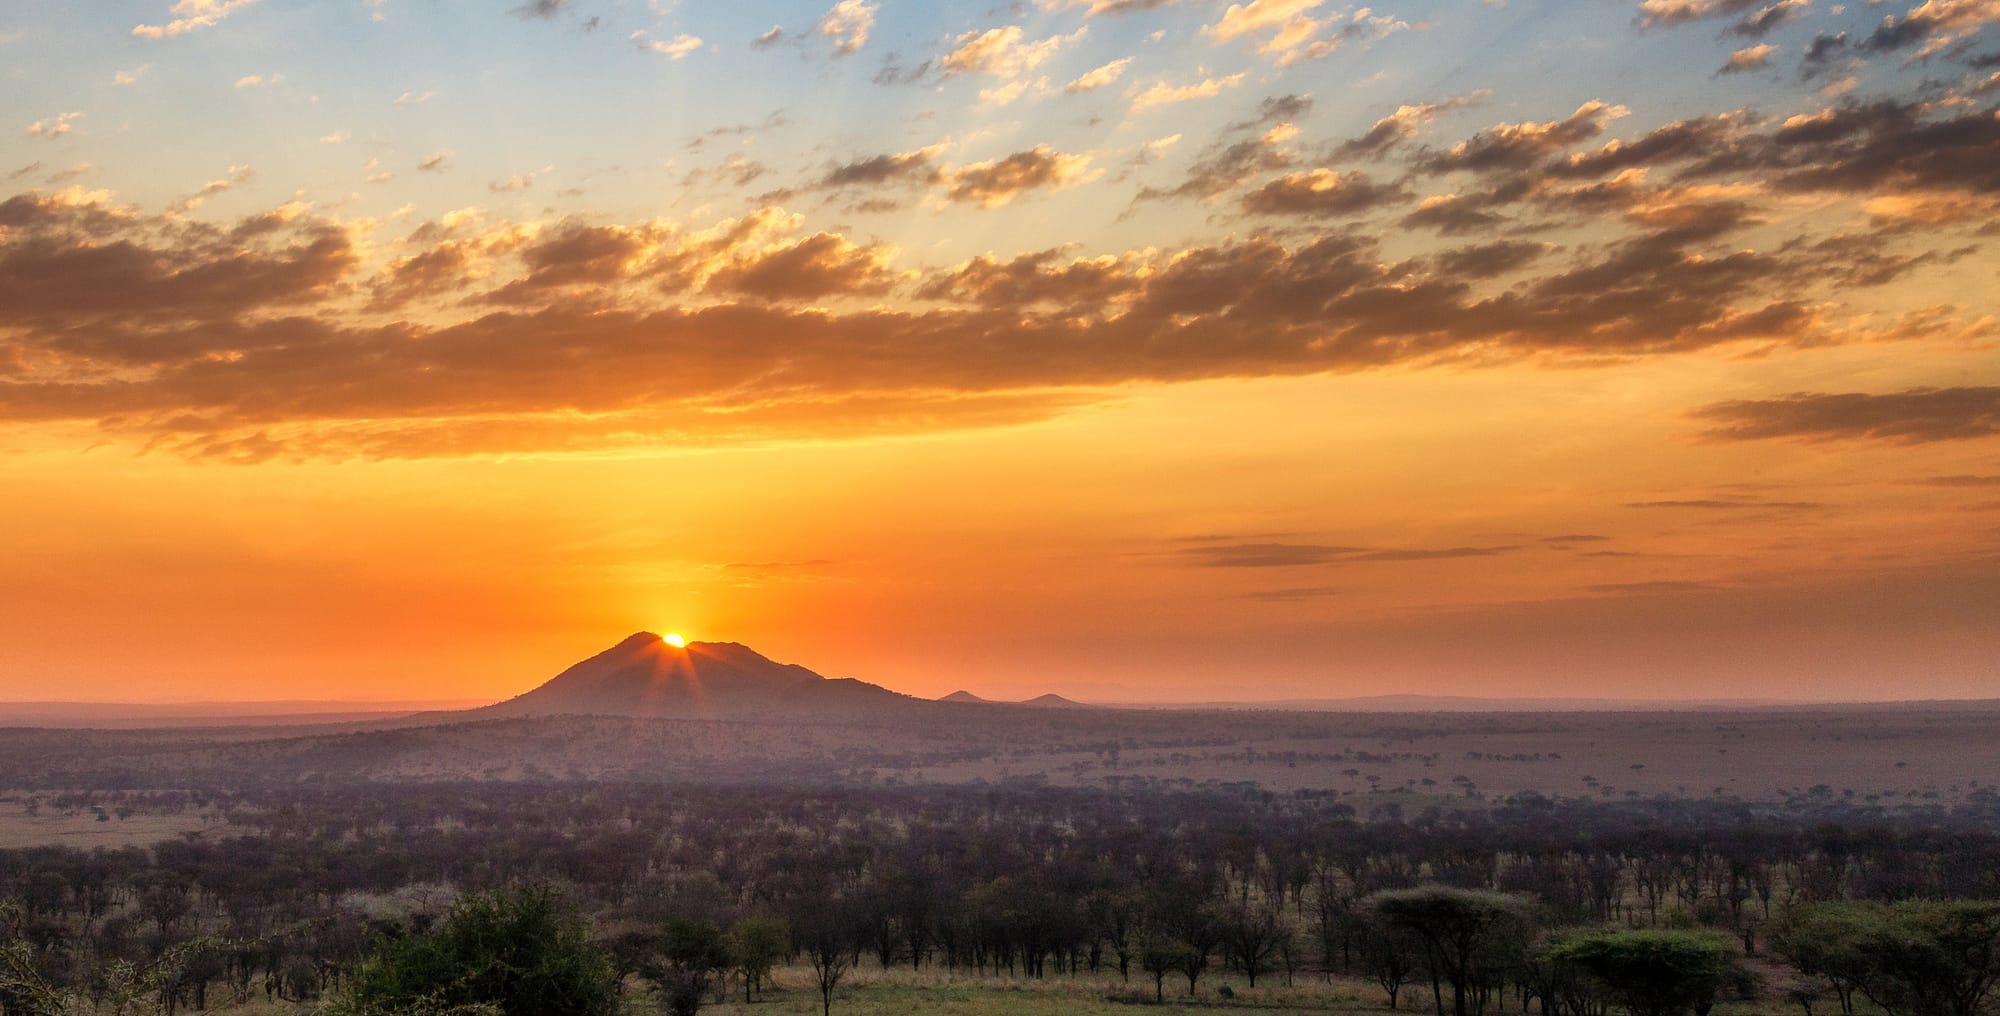 Sunrise over tanzania safari landscape